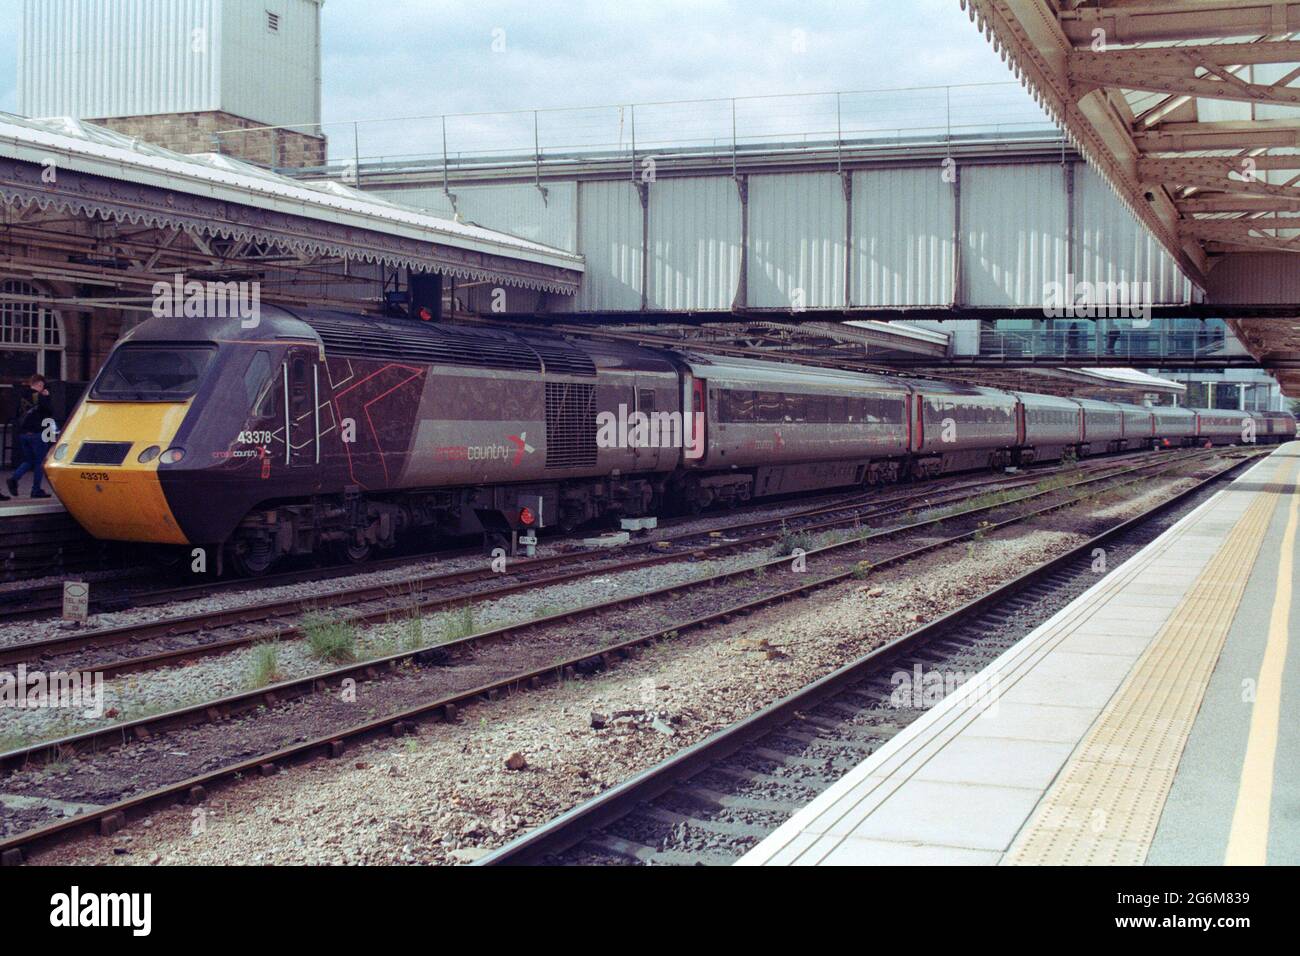 Sheffield, Großbritannien - 22. Mai 2021: Ein HST-Betrieb (High Speed Train) im Crosscountry am Bahnhof Sheffield. Stockfoto